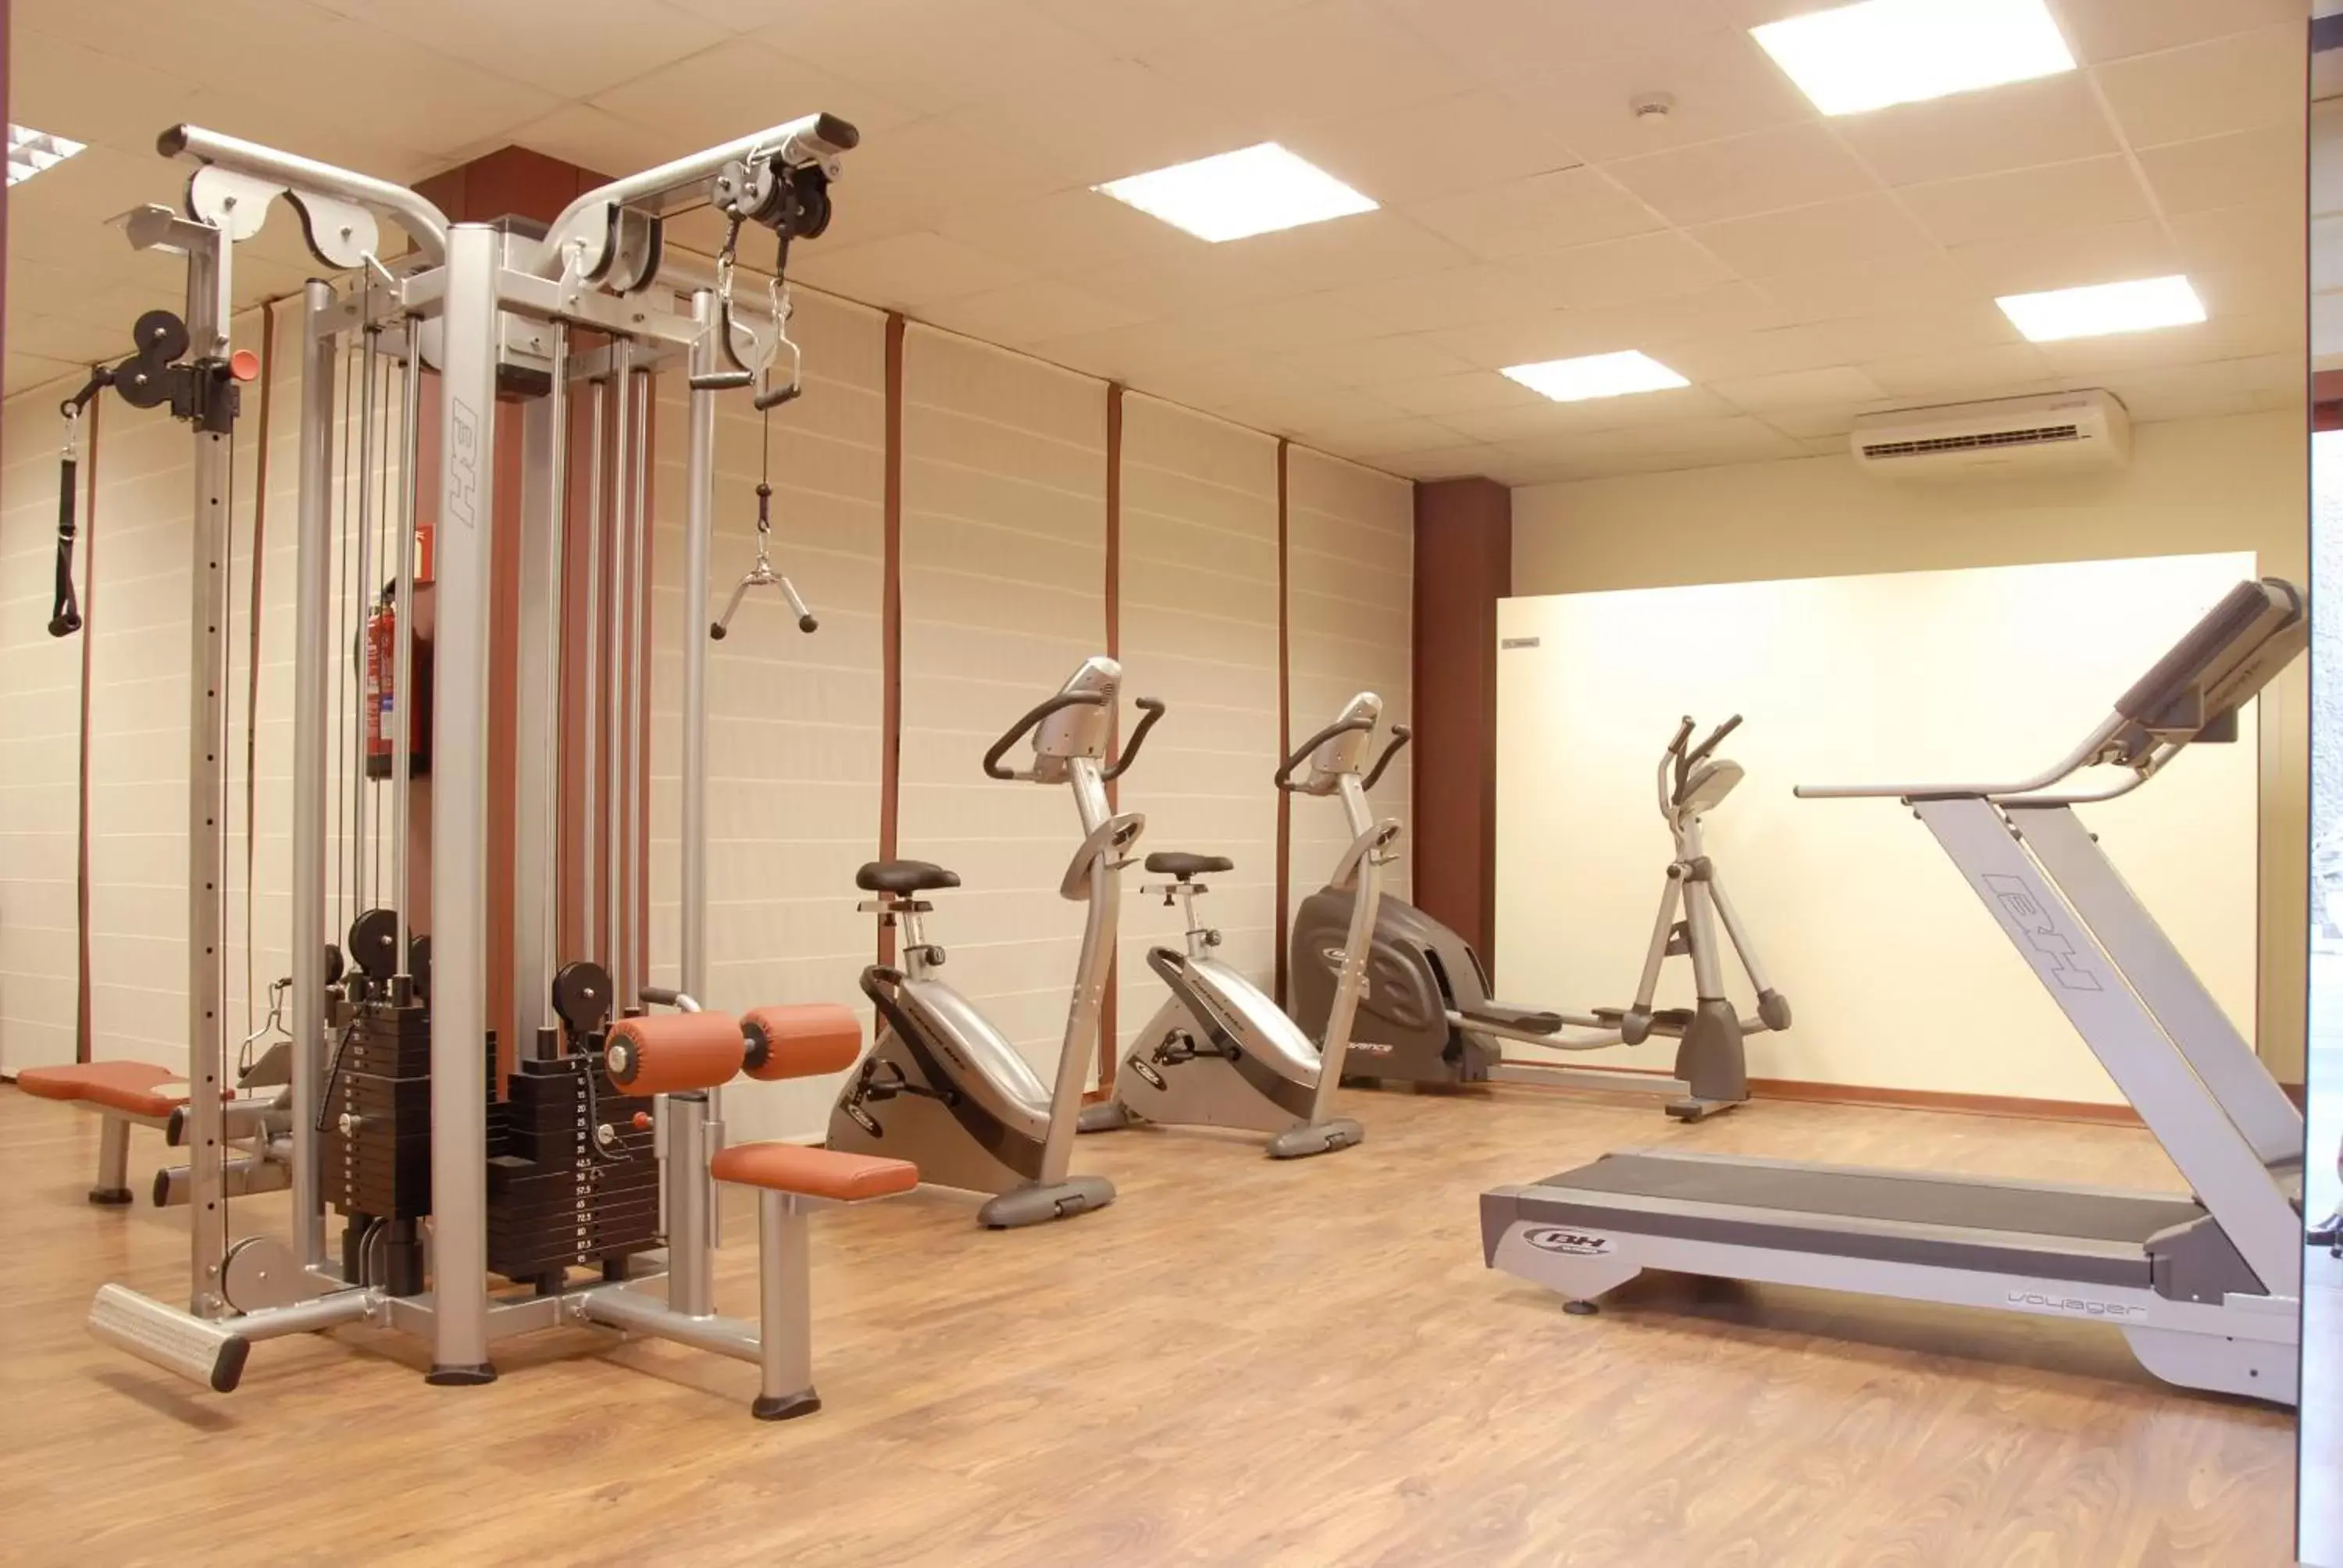 Fitness centre/facilities, Fitness Center/Facilities in Silken Puerta Madrid